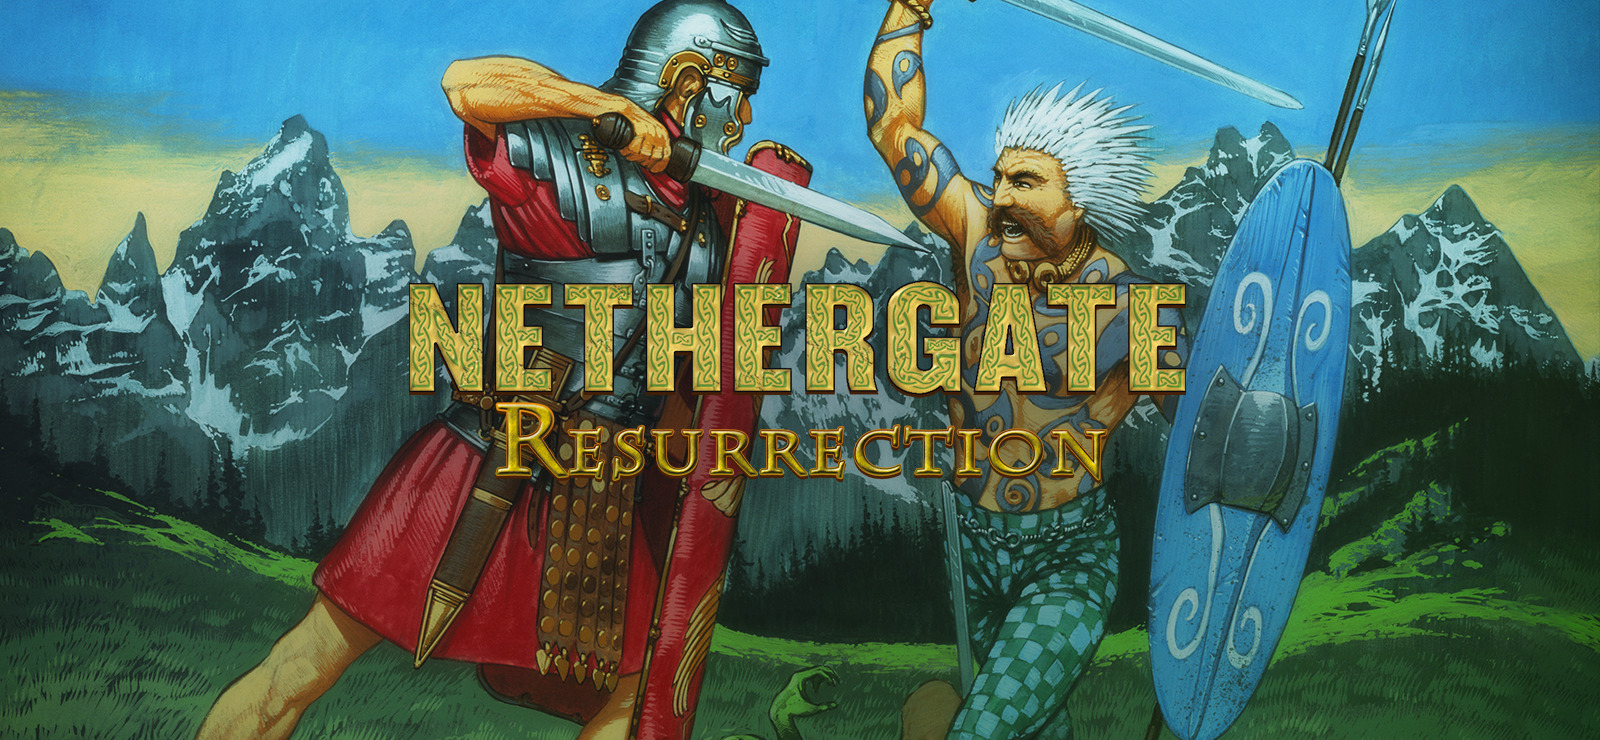 Nethergate - Wikipedia